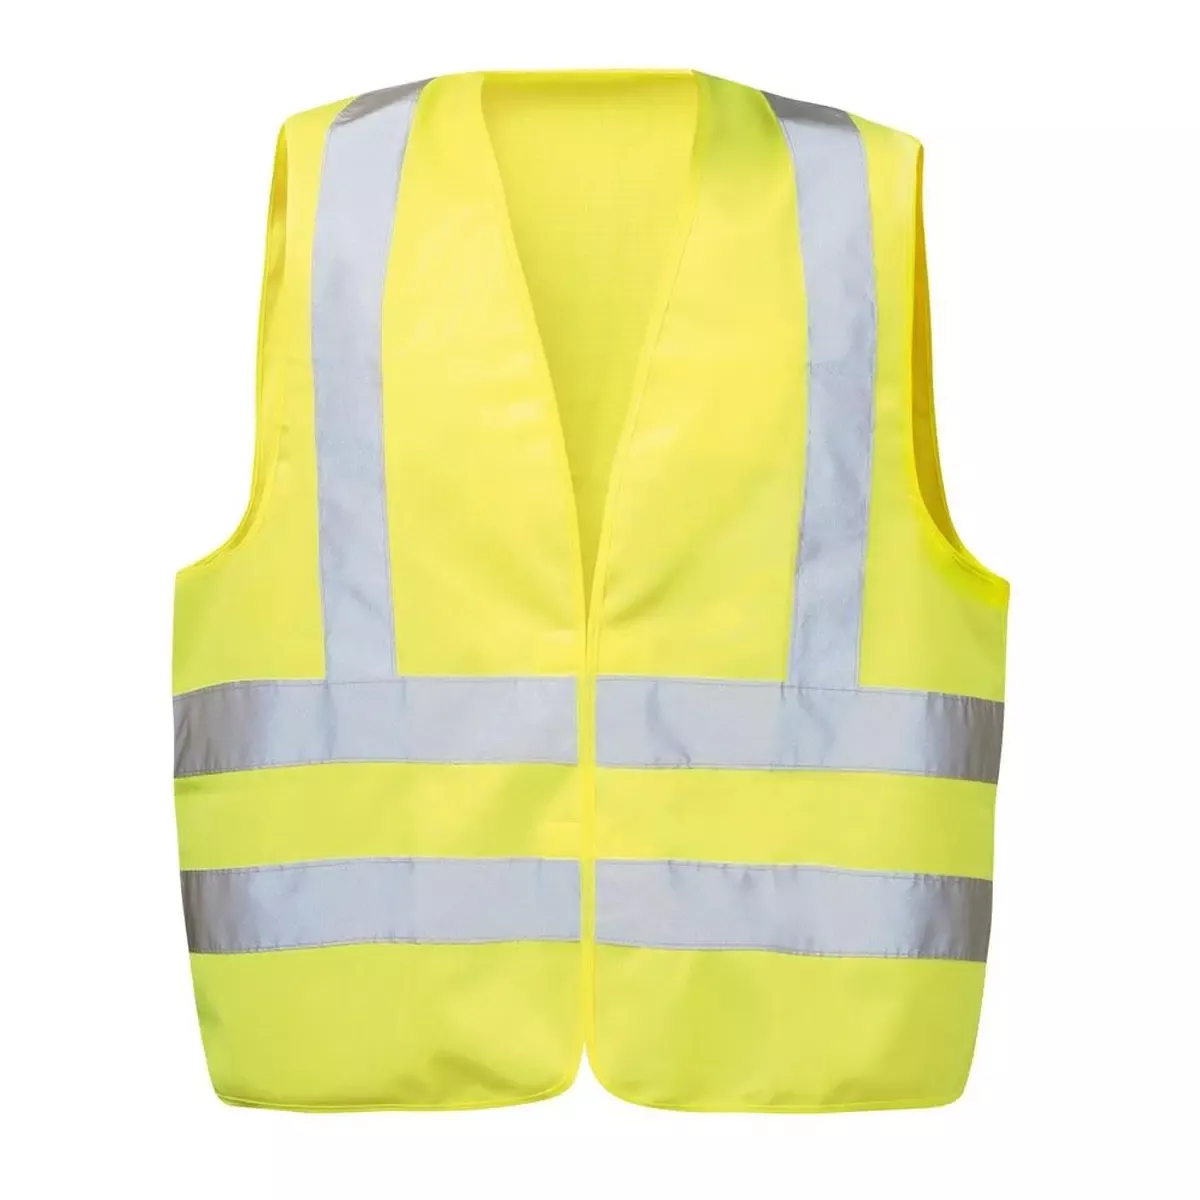 Warnweste EGON, aus Polyester, Farbe gelb, mit Schulterreflexband